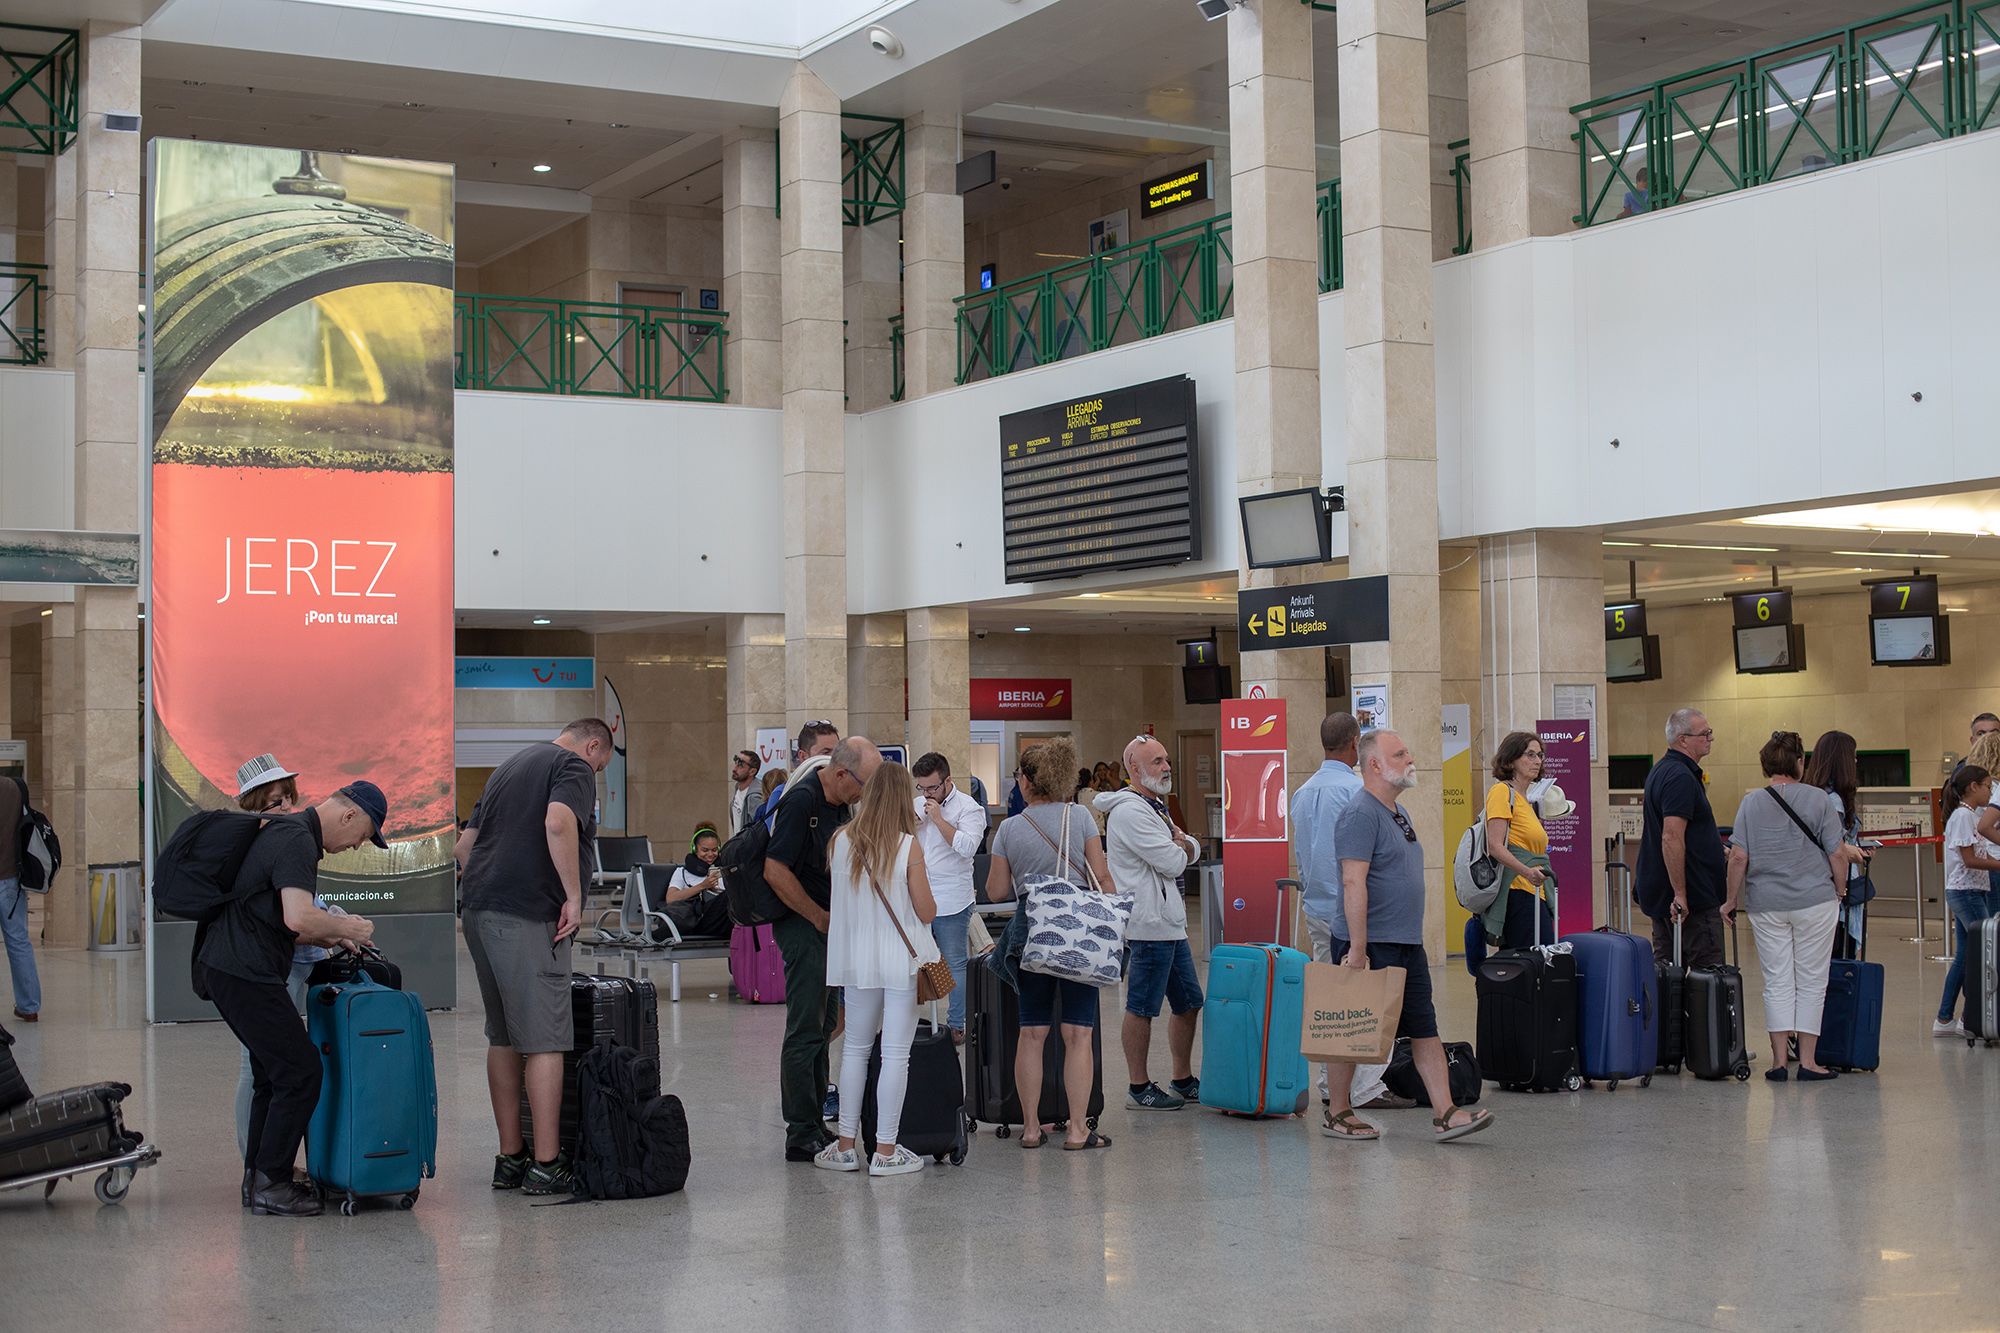 Usuarios aguardando facturar en el Aeropuerto de Jerez, en. una imagen reciente. FOTO: JUAN CARLOS TORO